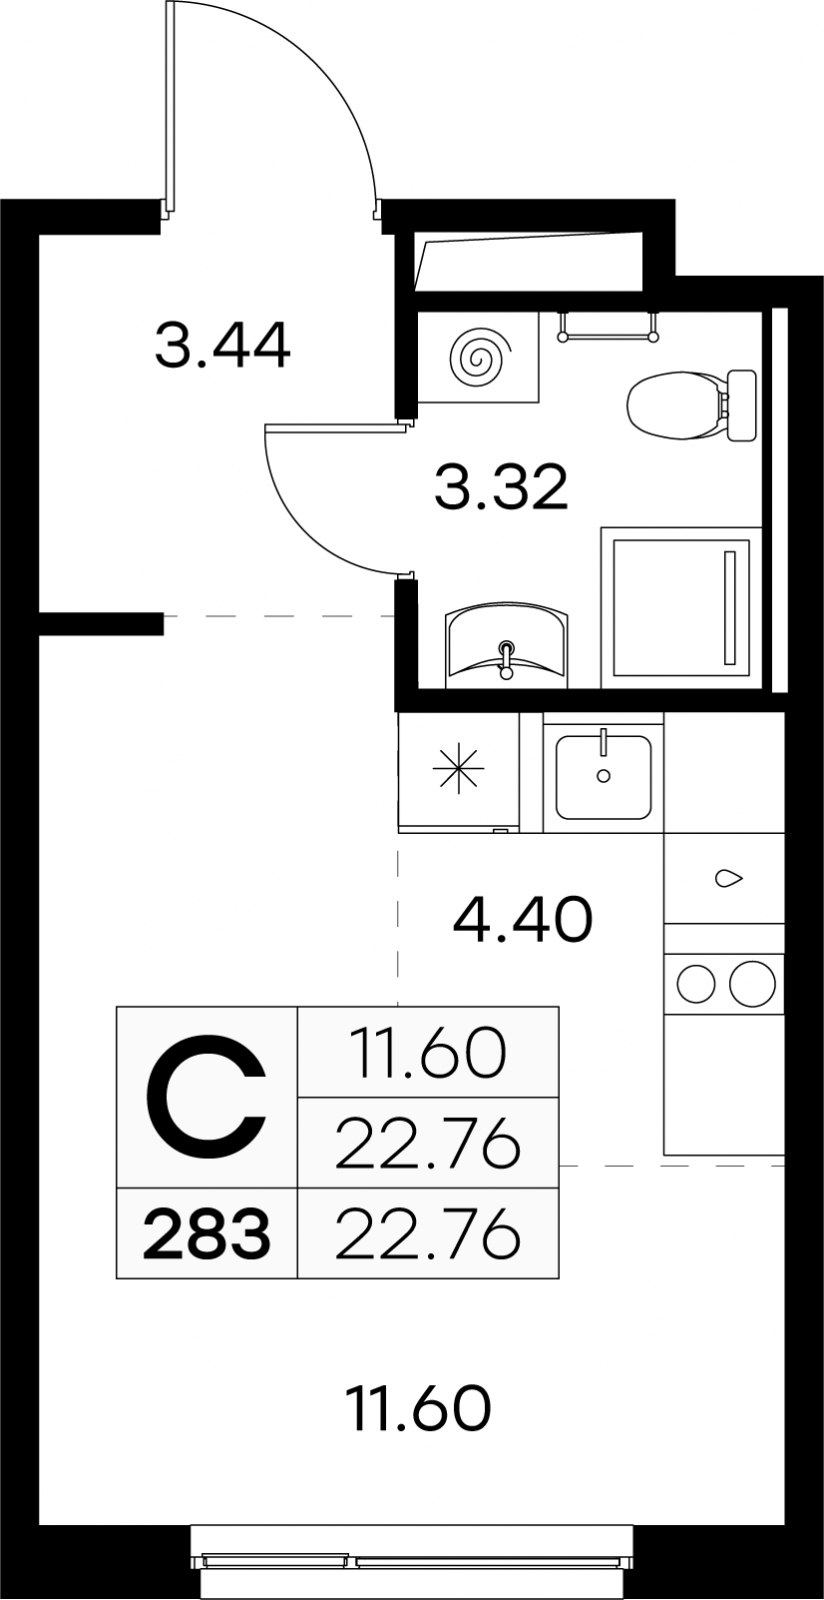 2-комнатная квартира с отделкой в ЖК Аквилон ЯНИНО на 2 этаже в 1 секции. Сдача в 4 кв. 2026 г.